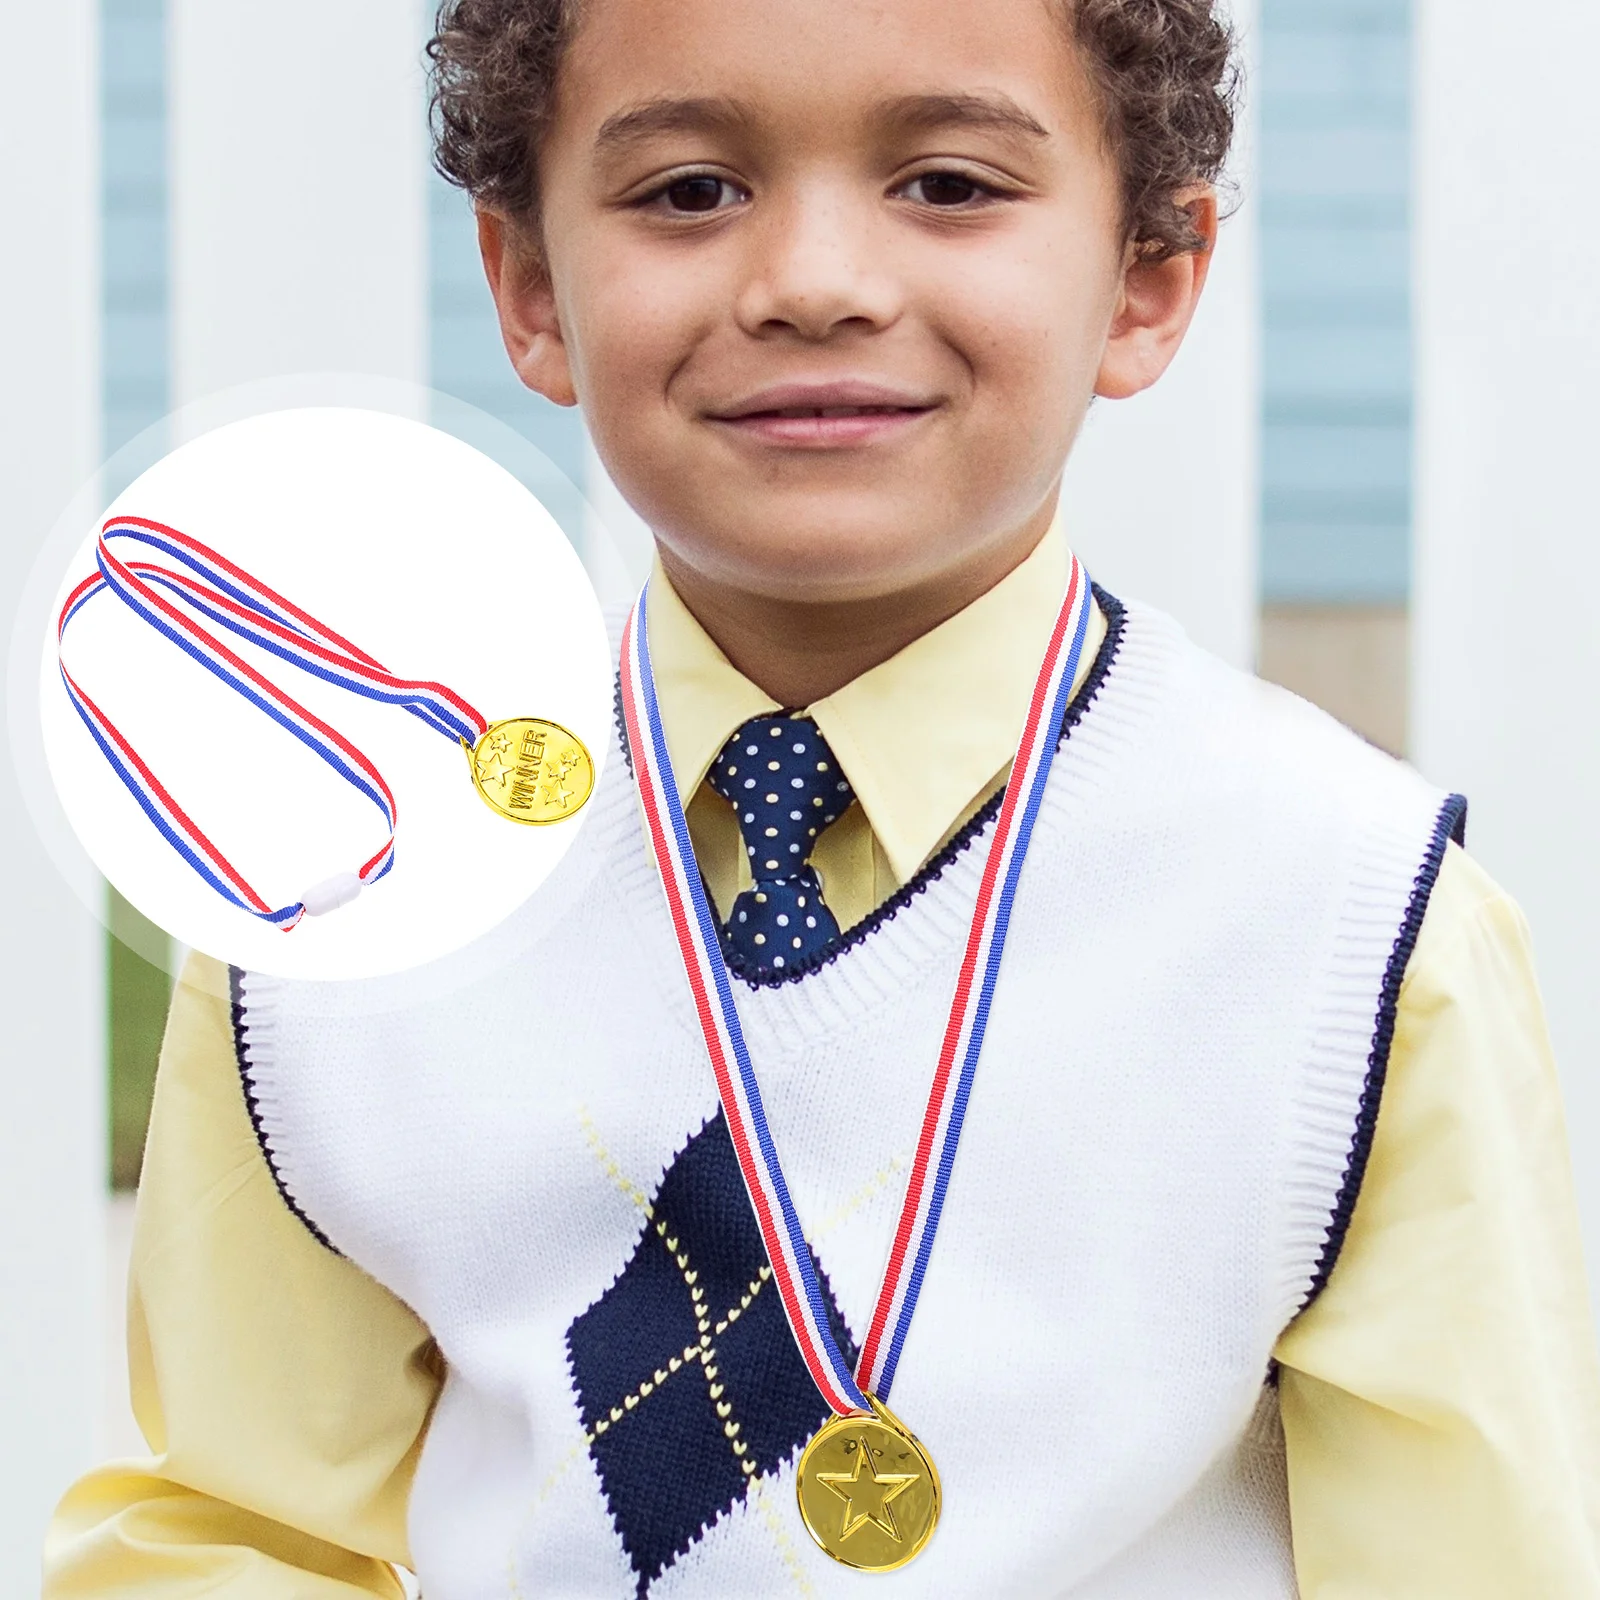 30 Pcs Children's Plastic Gold Medal Soccer Medal Royal Medal Trophy Award Medals Toys Polyester Custom Medals Student